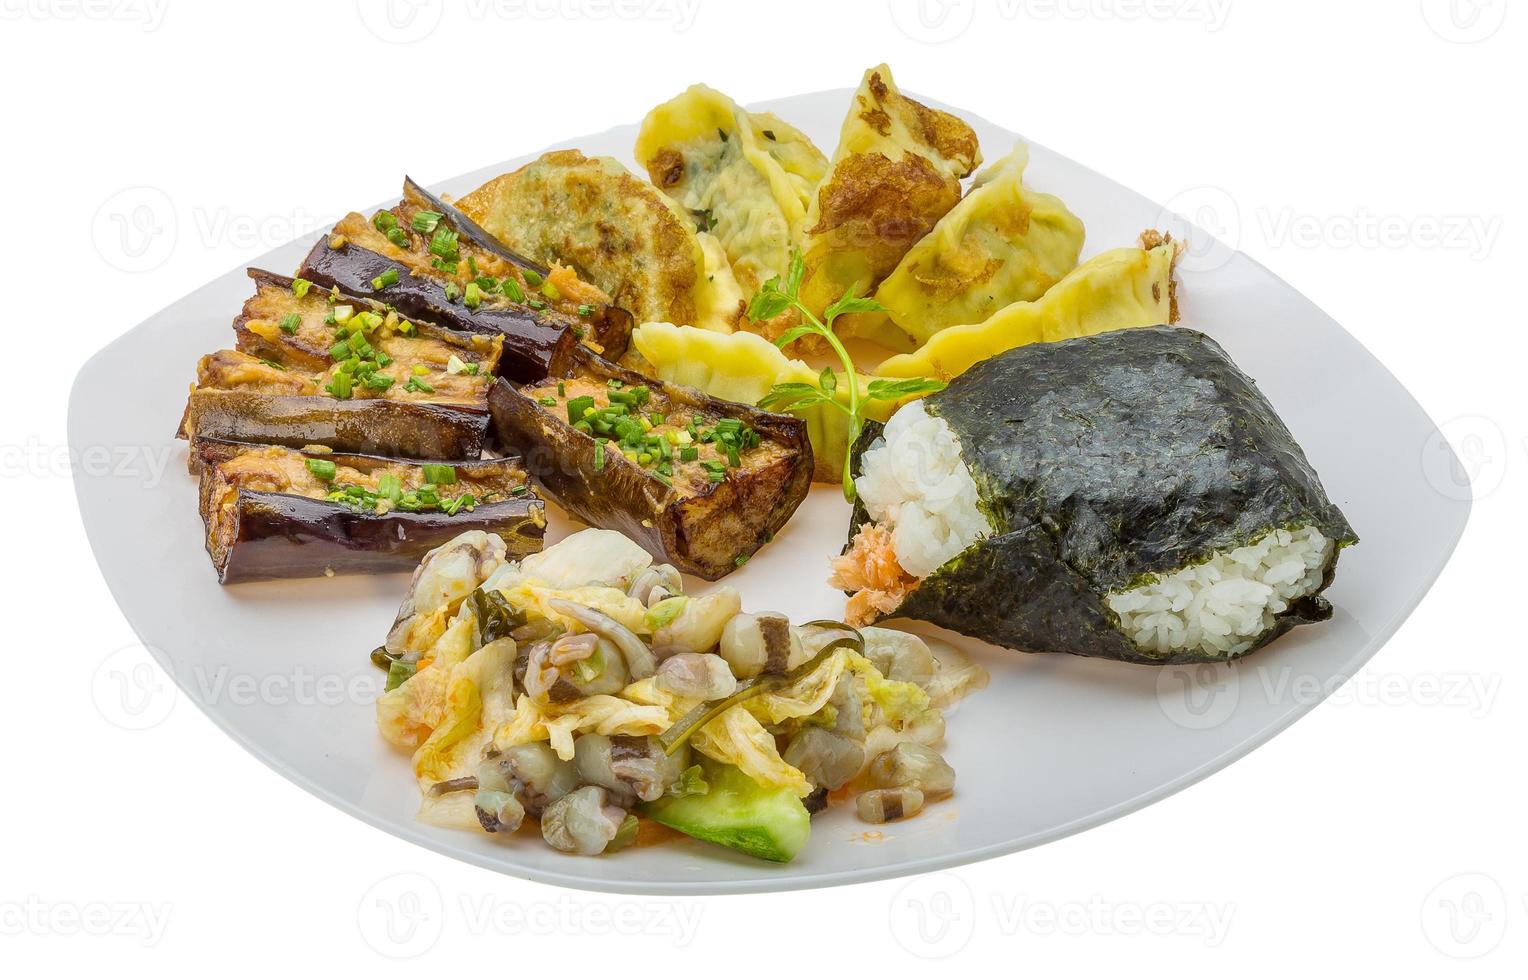 comida tradicional japonesa en el plato y fondo blanco foto